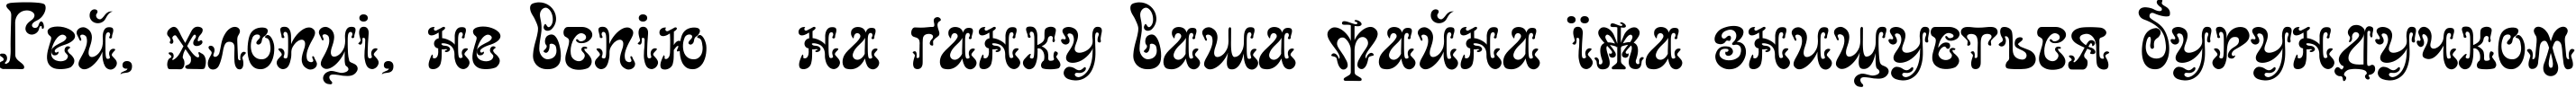 Пример написания шрифтом Juvelir Nouveau текста на украинском